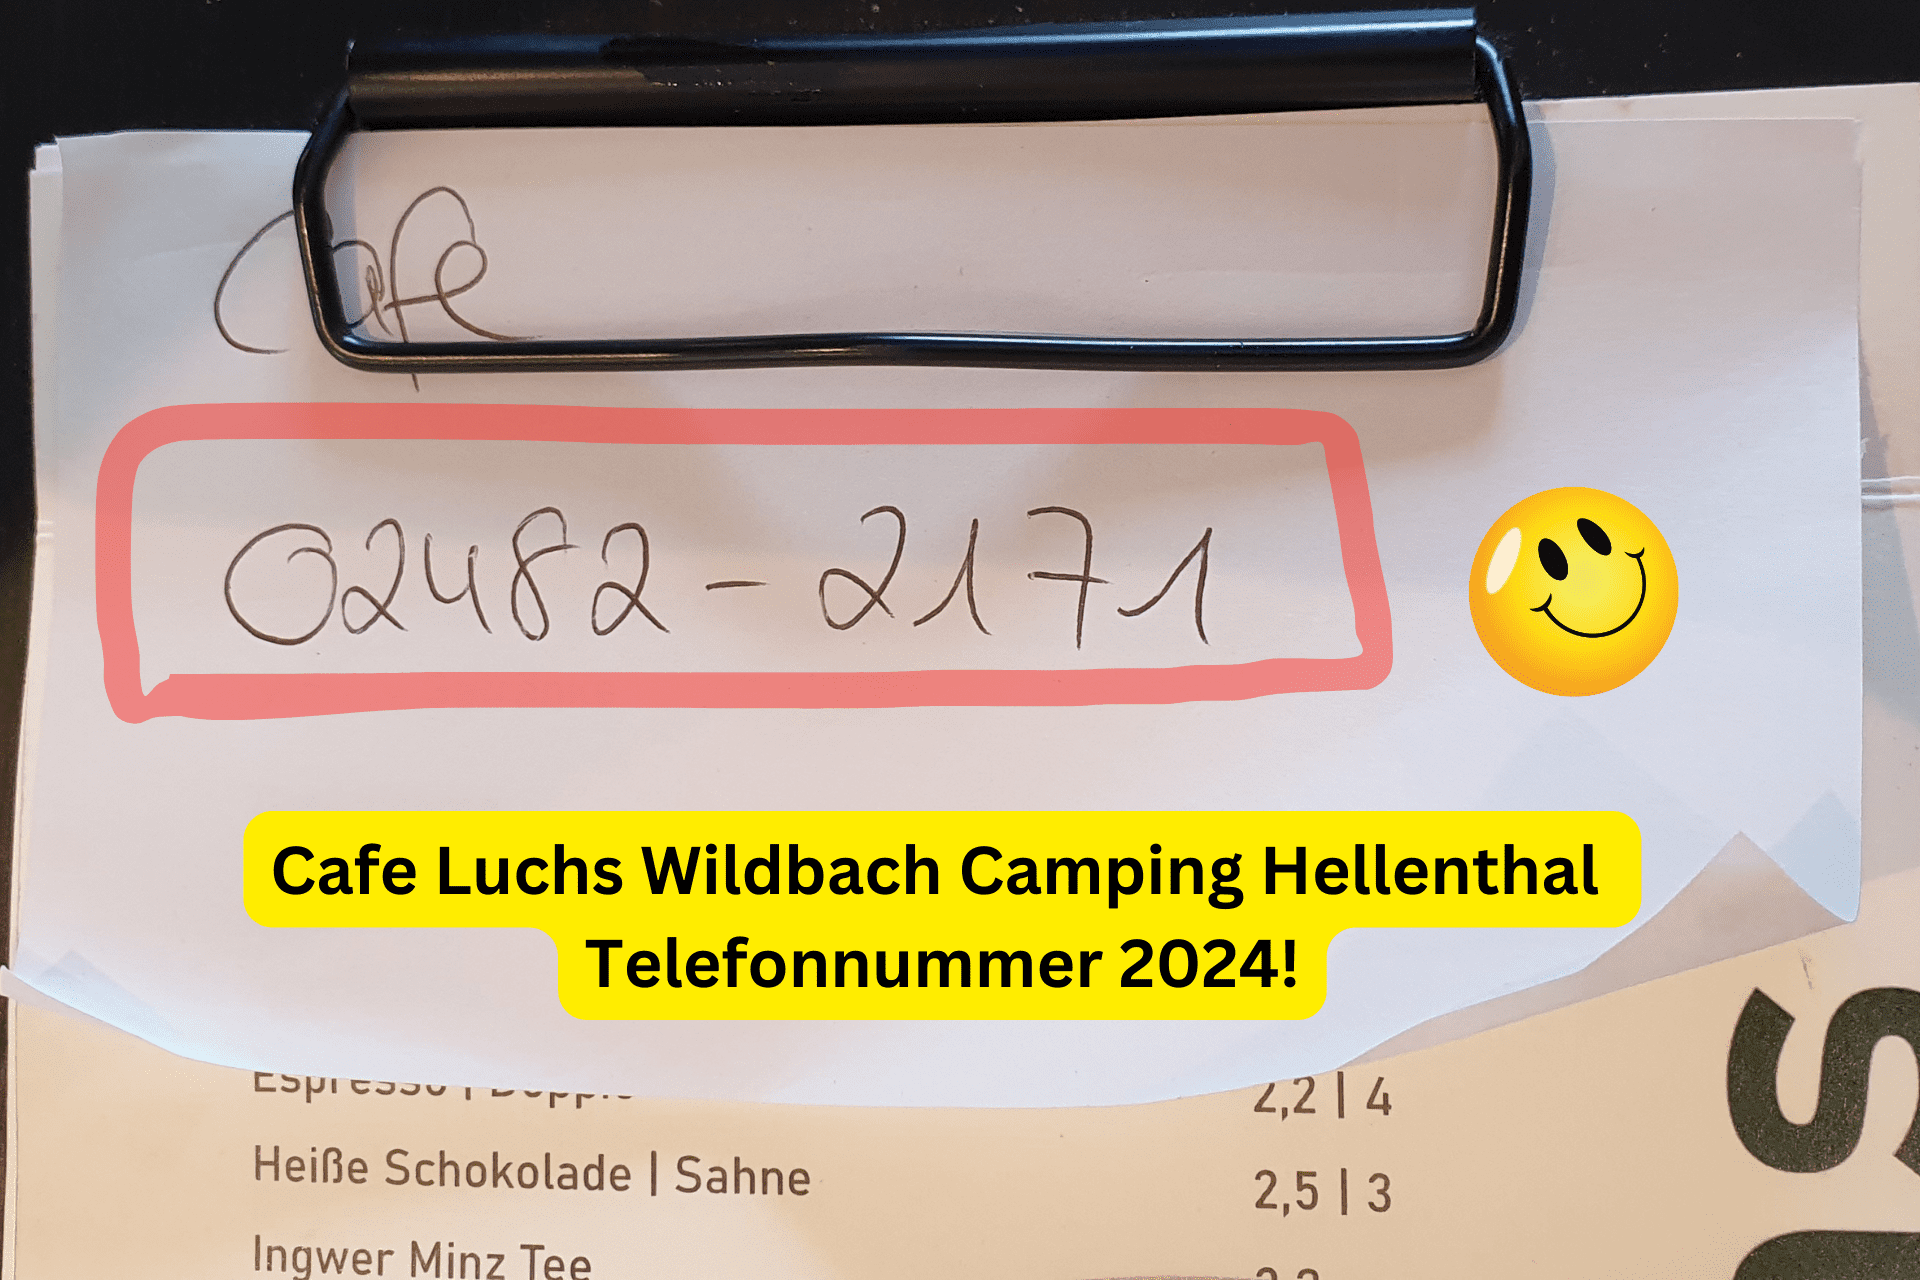 Telefonnummer Cafe Luchs Hellenthal Wildbach Camping